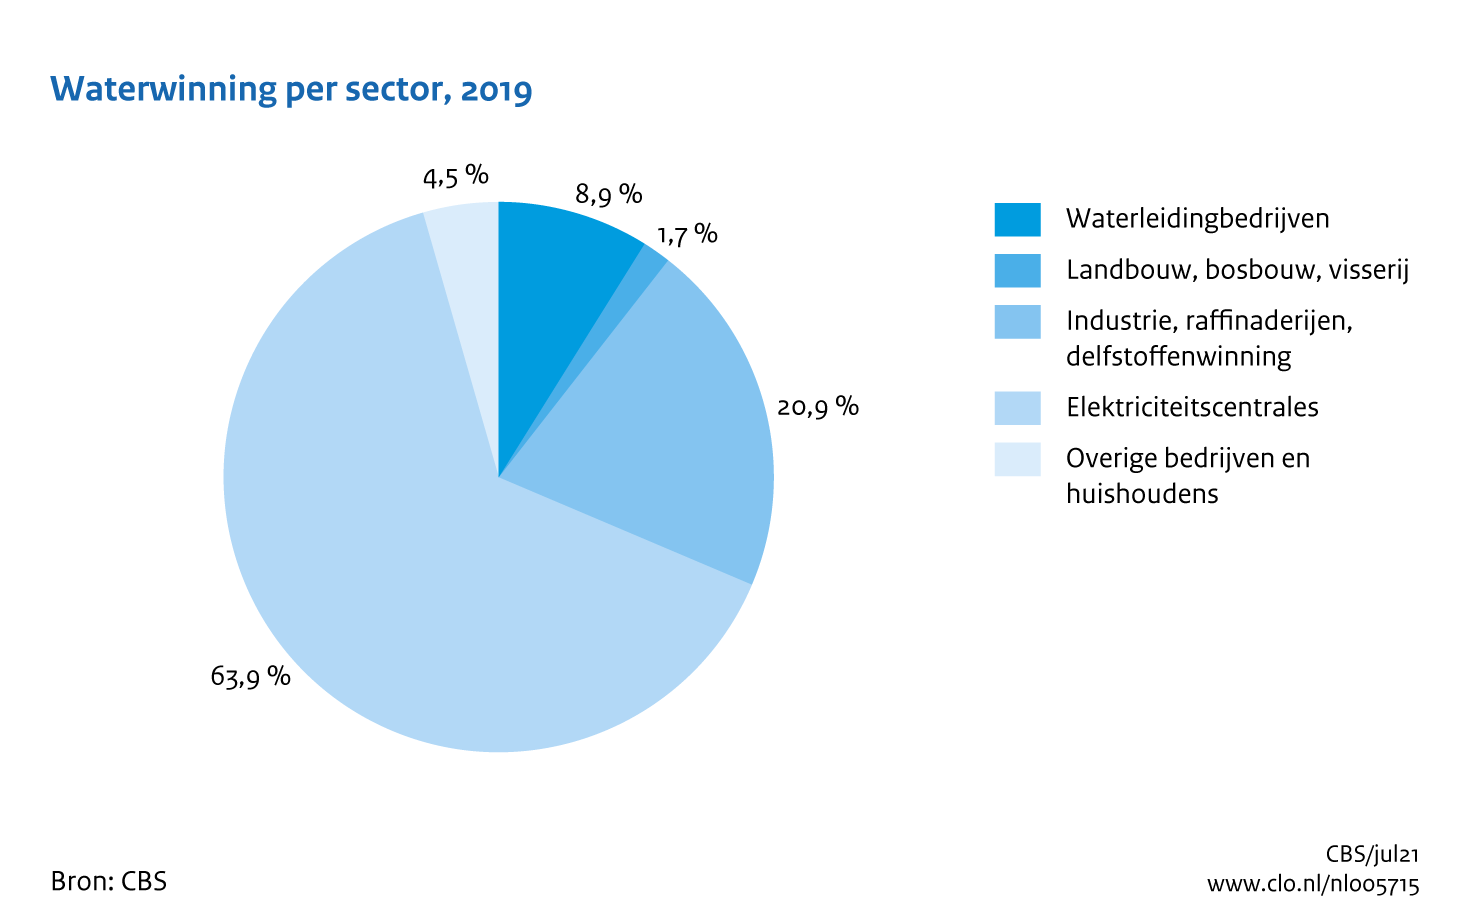 Figuur Waterwinning sectoren 2019. In de rest van de tekst wordt deze figuur uitgebreider uitgelegd.